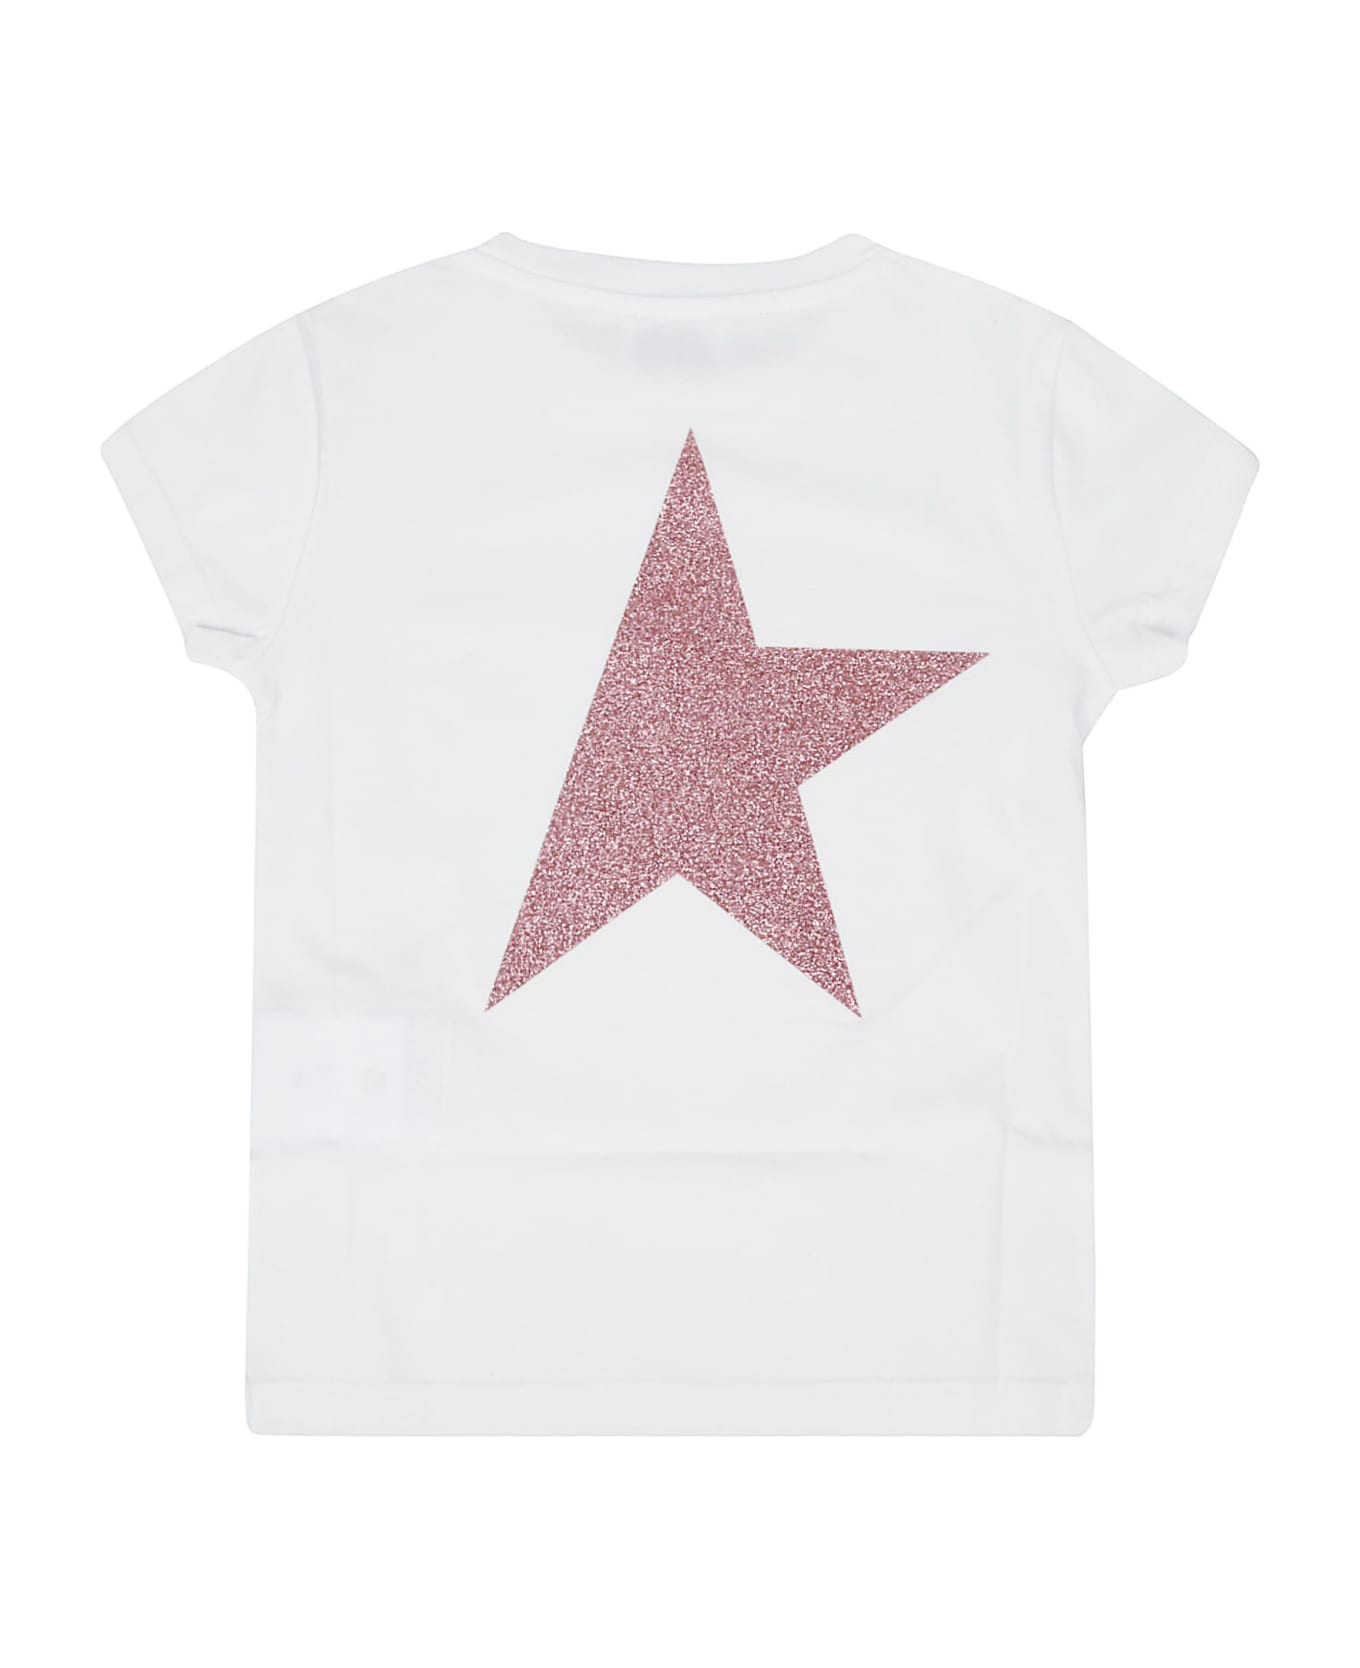 Golden Goose Star Girl's T-shirt S S Logo - 10310 Tシャツ＆ポロシャツ